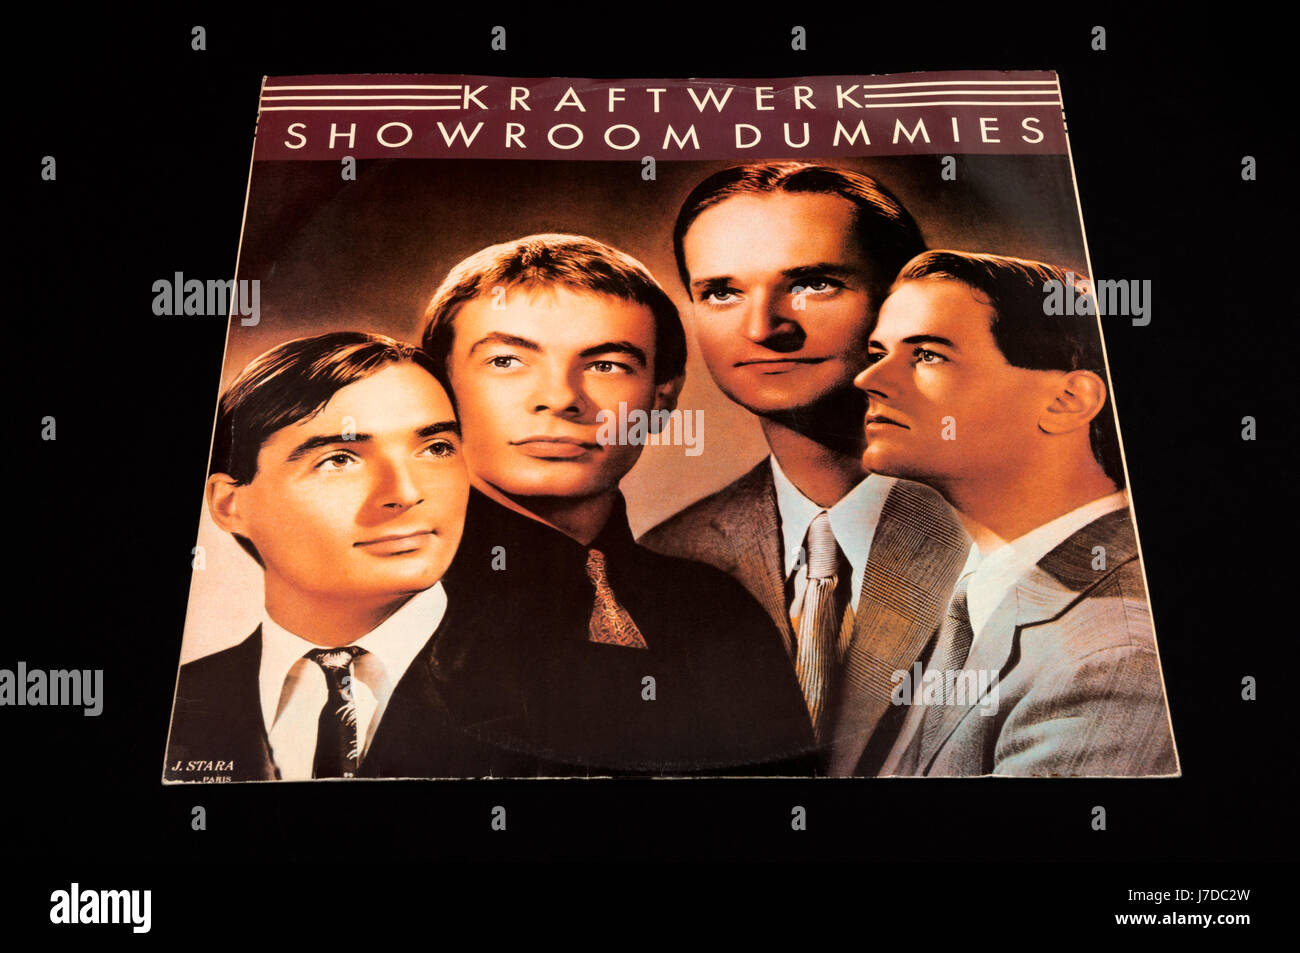 Kraftwerk Showroom Dummies 12 inch single Stock Photo